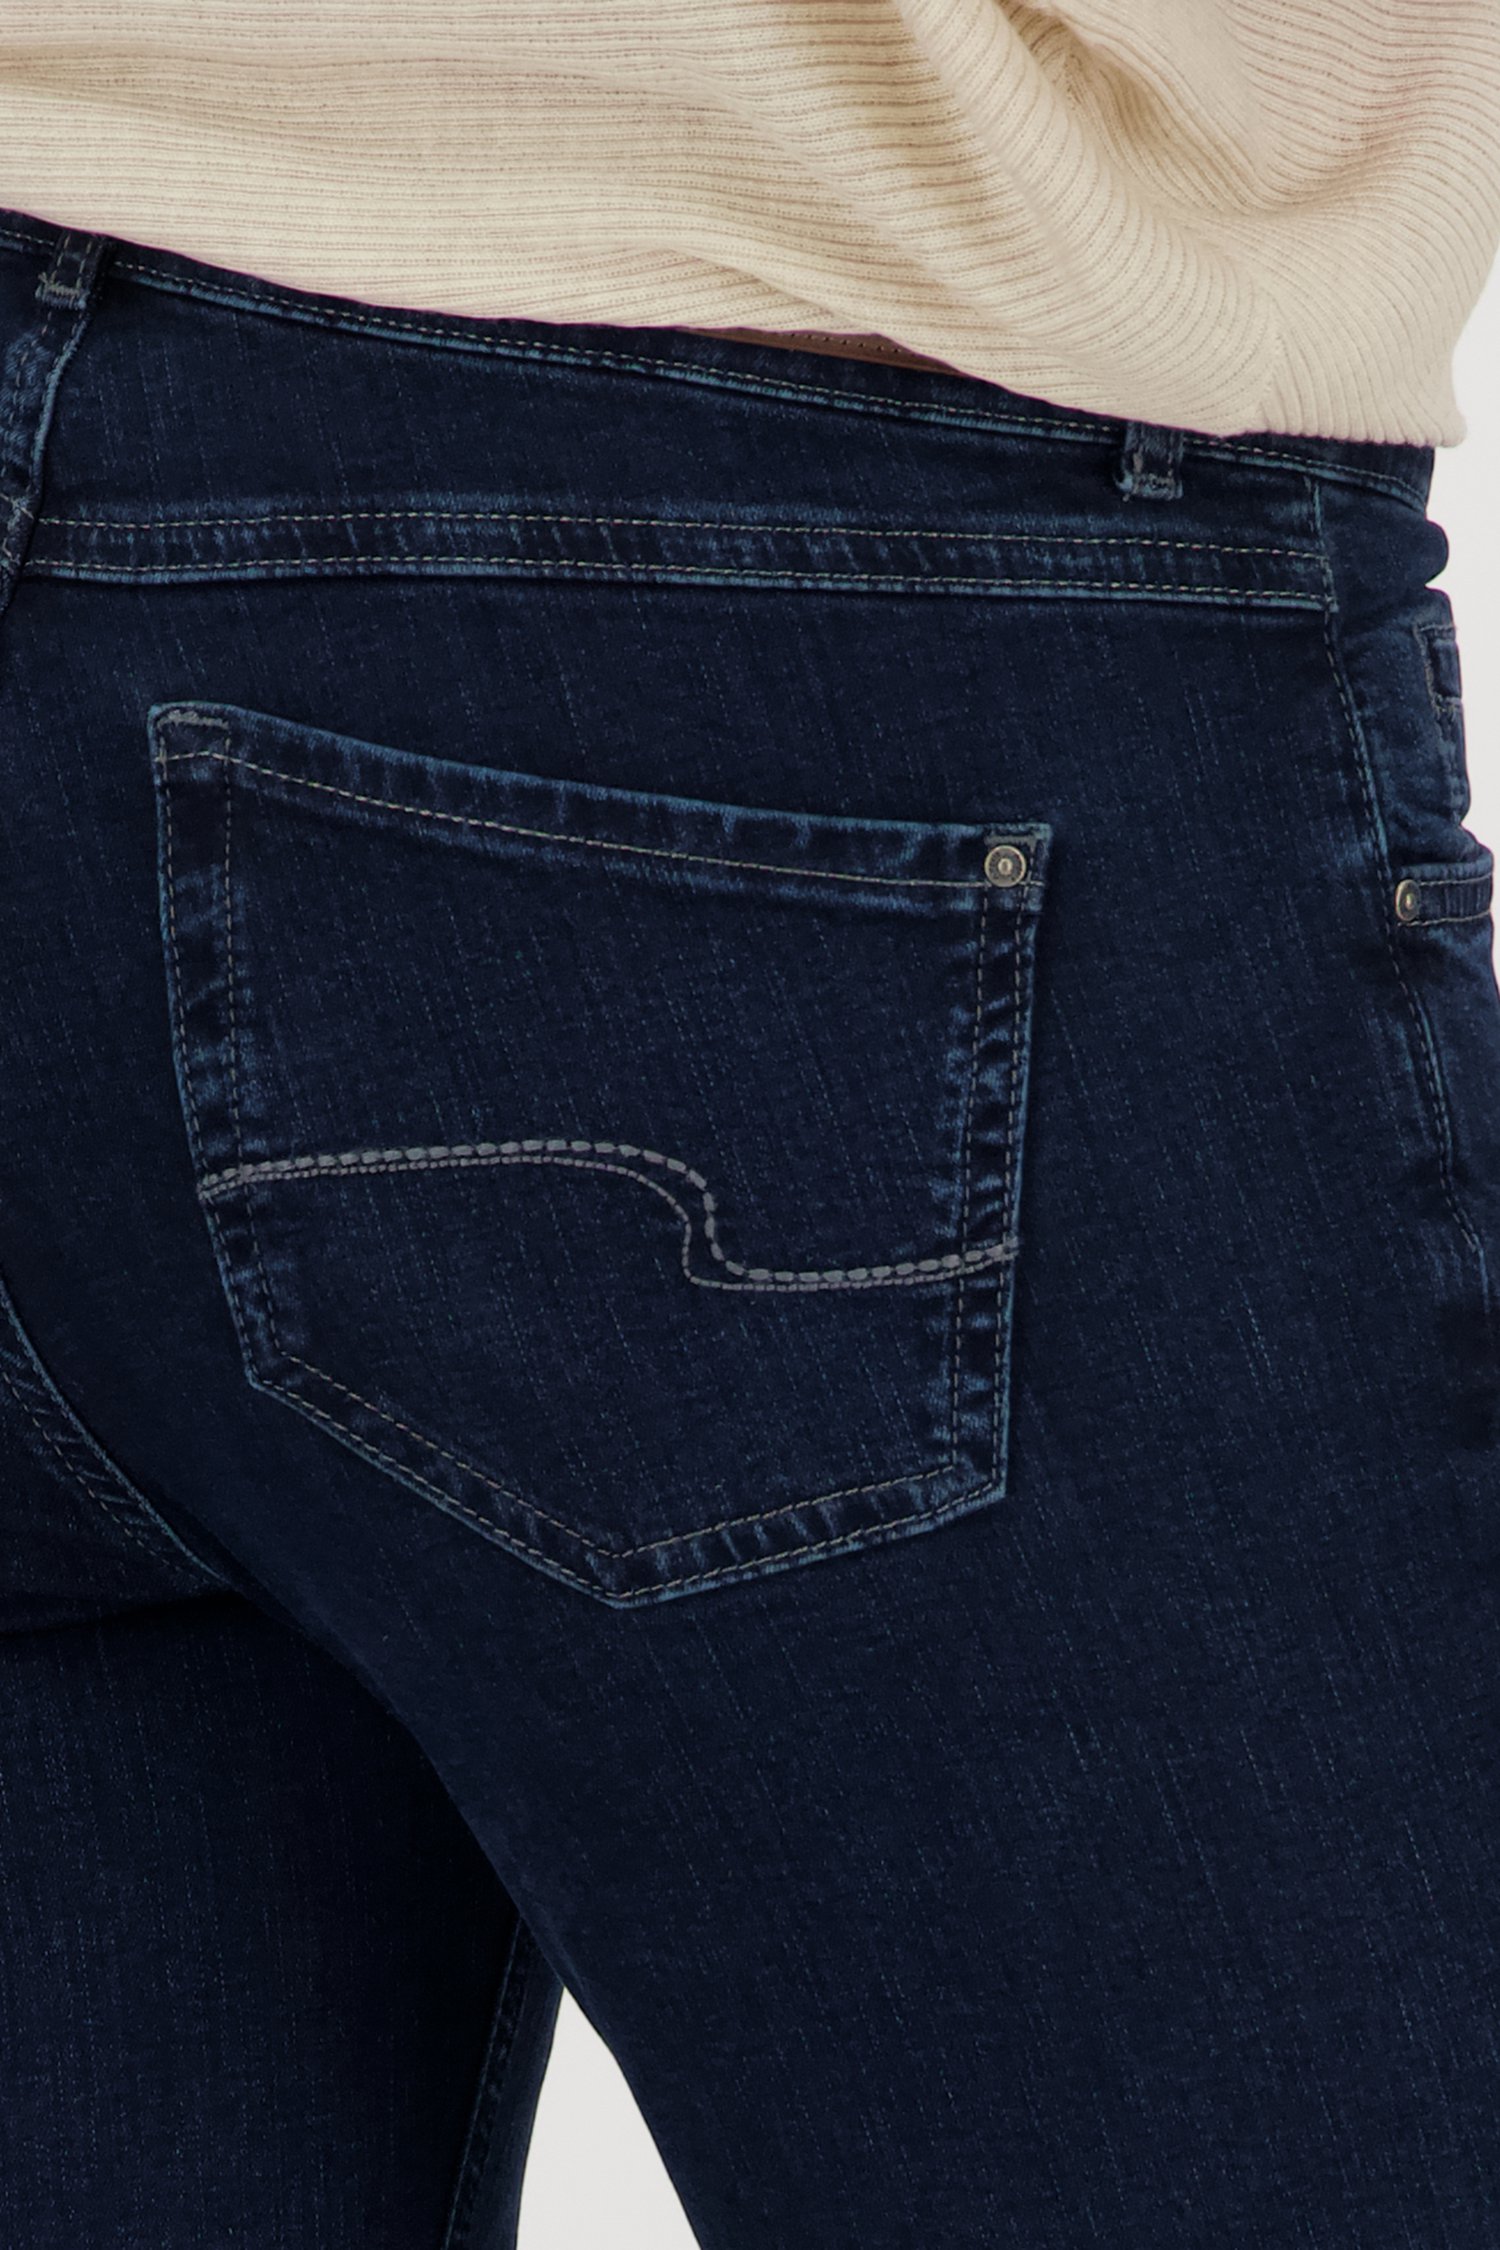 Donkerblauwe jeans - Slim fit - L32 van Angels voor Dames